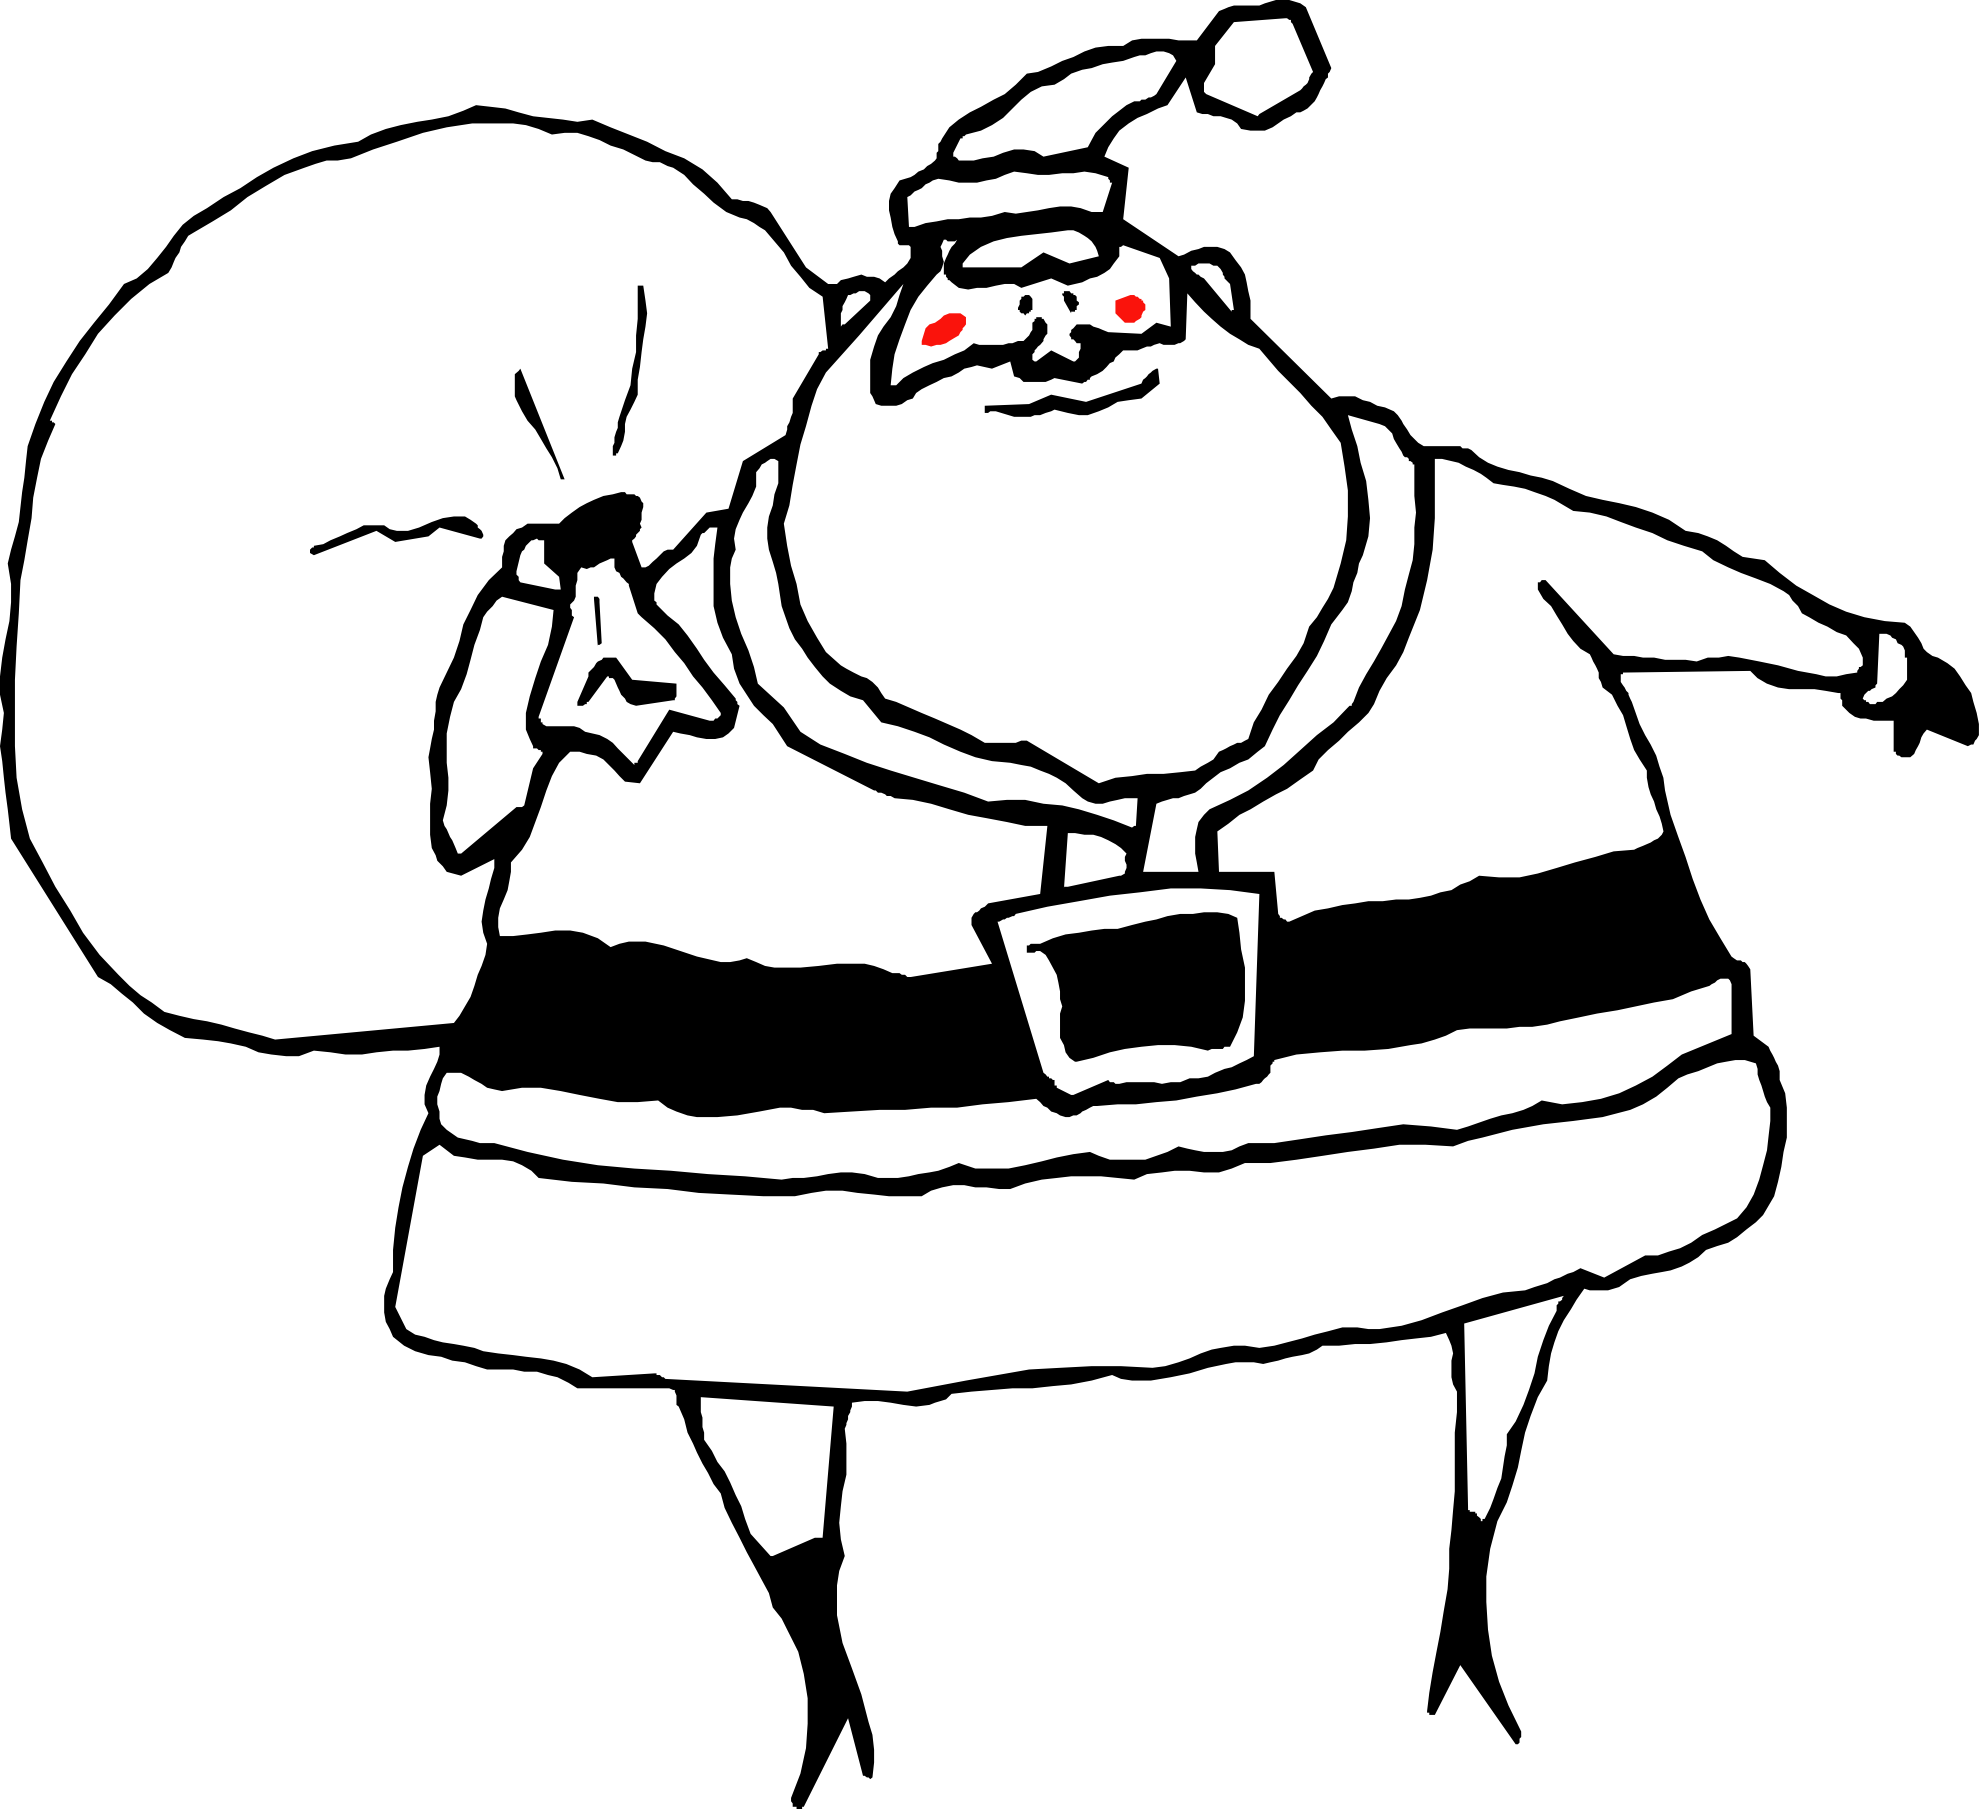 Free Santa Drawing Cliparts, Download Free Clip Art, Free Clip Art on Clipart Library